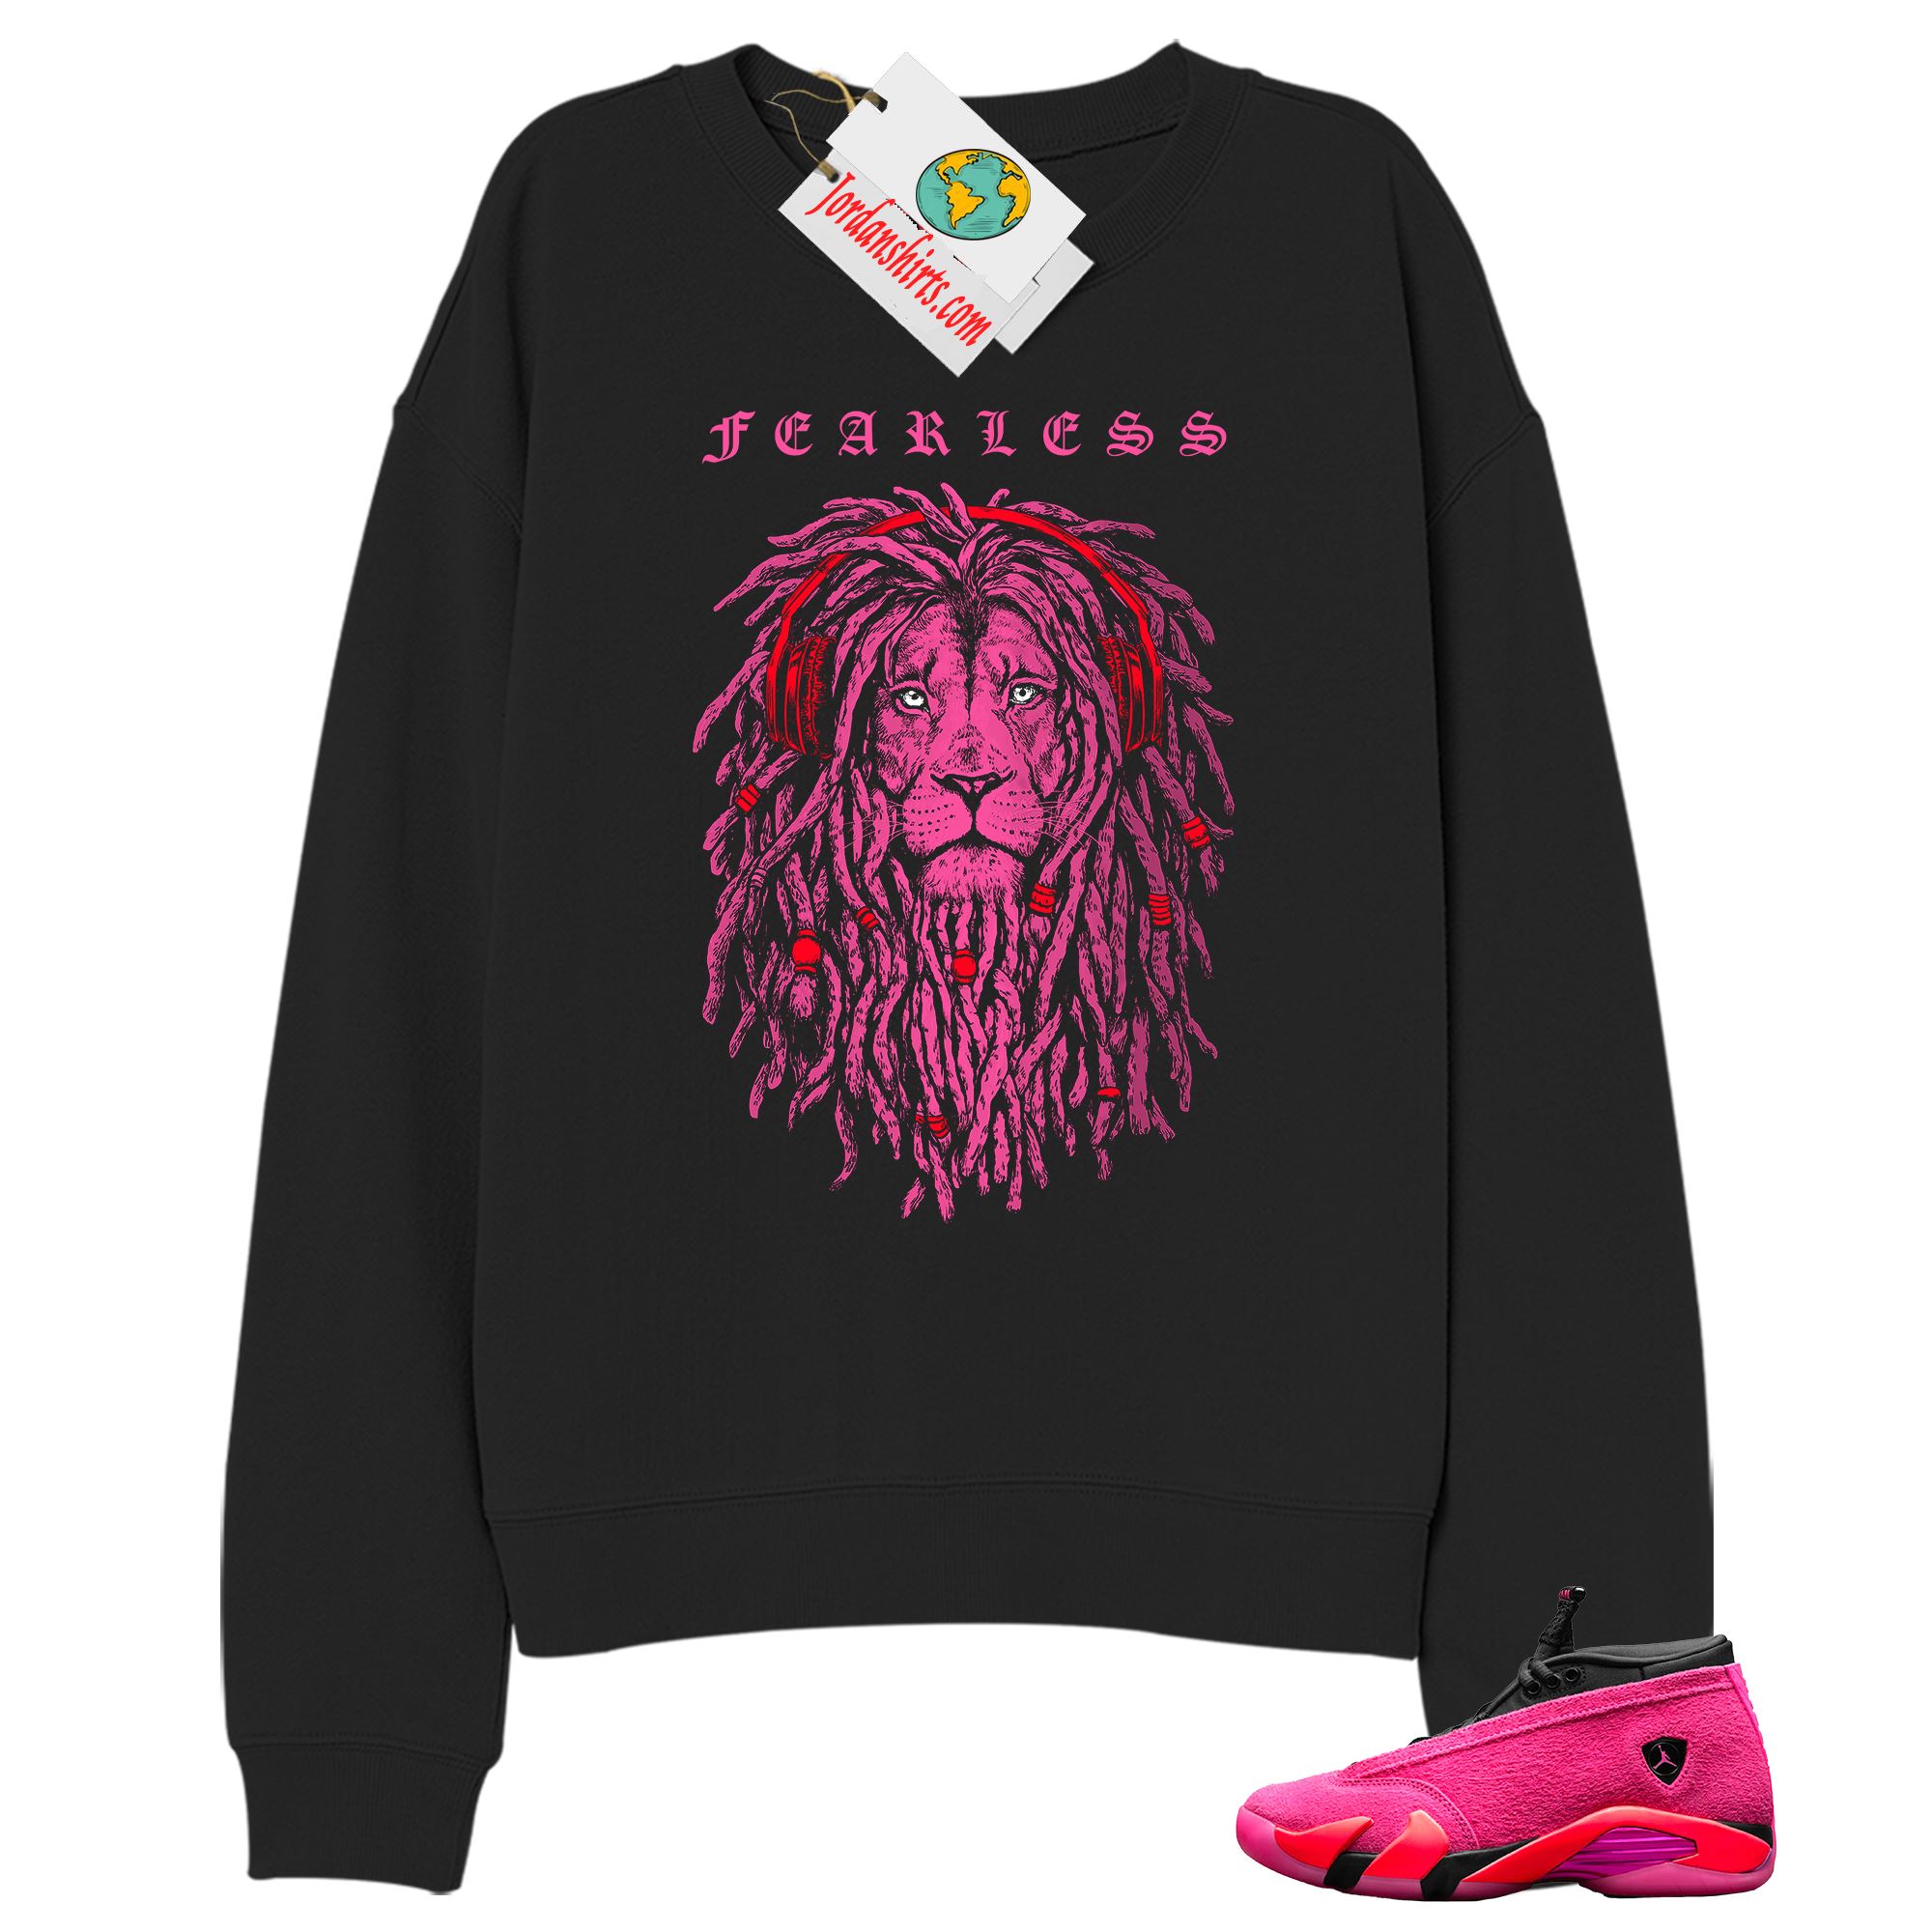 Jordan 14 Sweatshirt, Fearless Lion Black Sweatshirt Air Jordan 14 Wmns Shocking Pink 14s Plus Size Up To 5xl